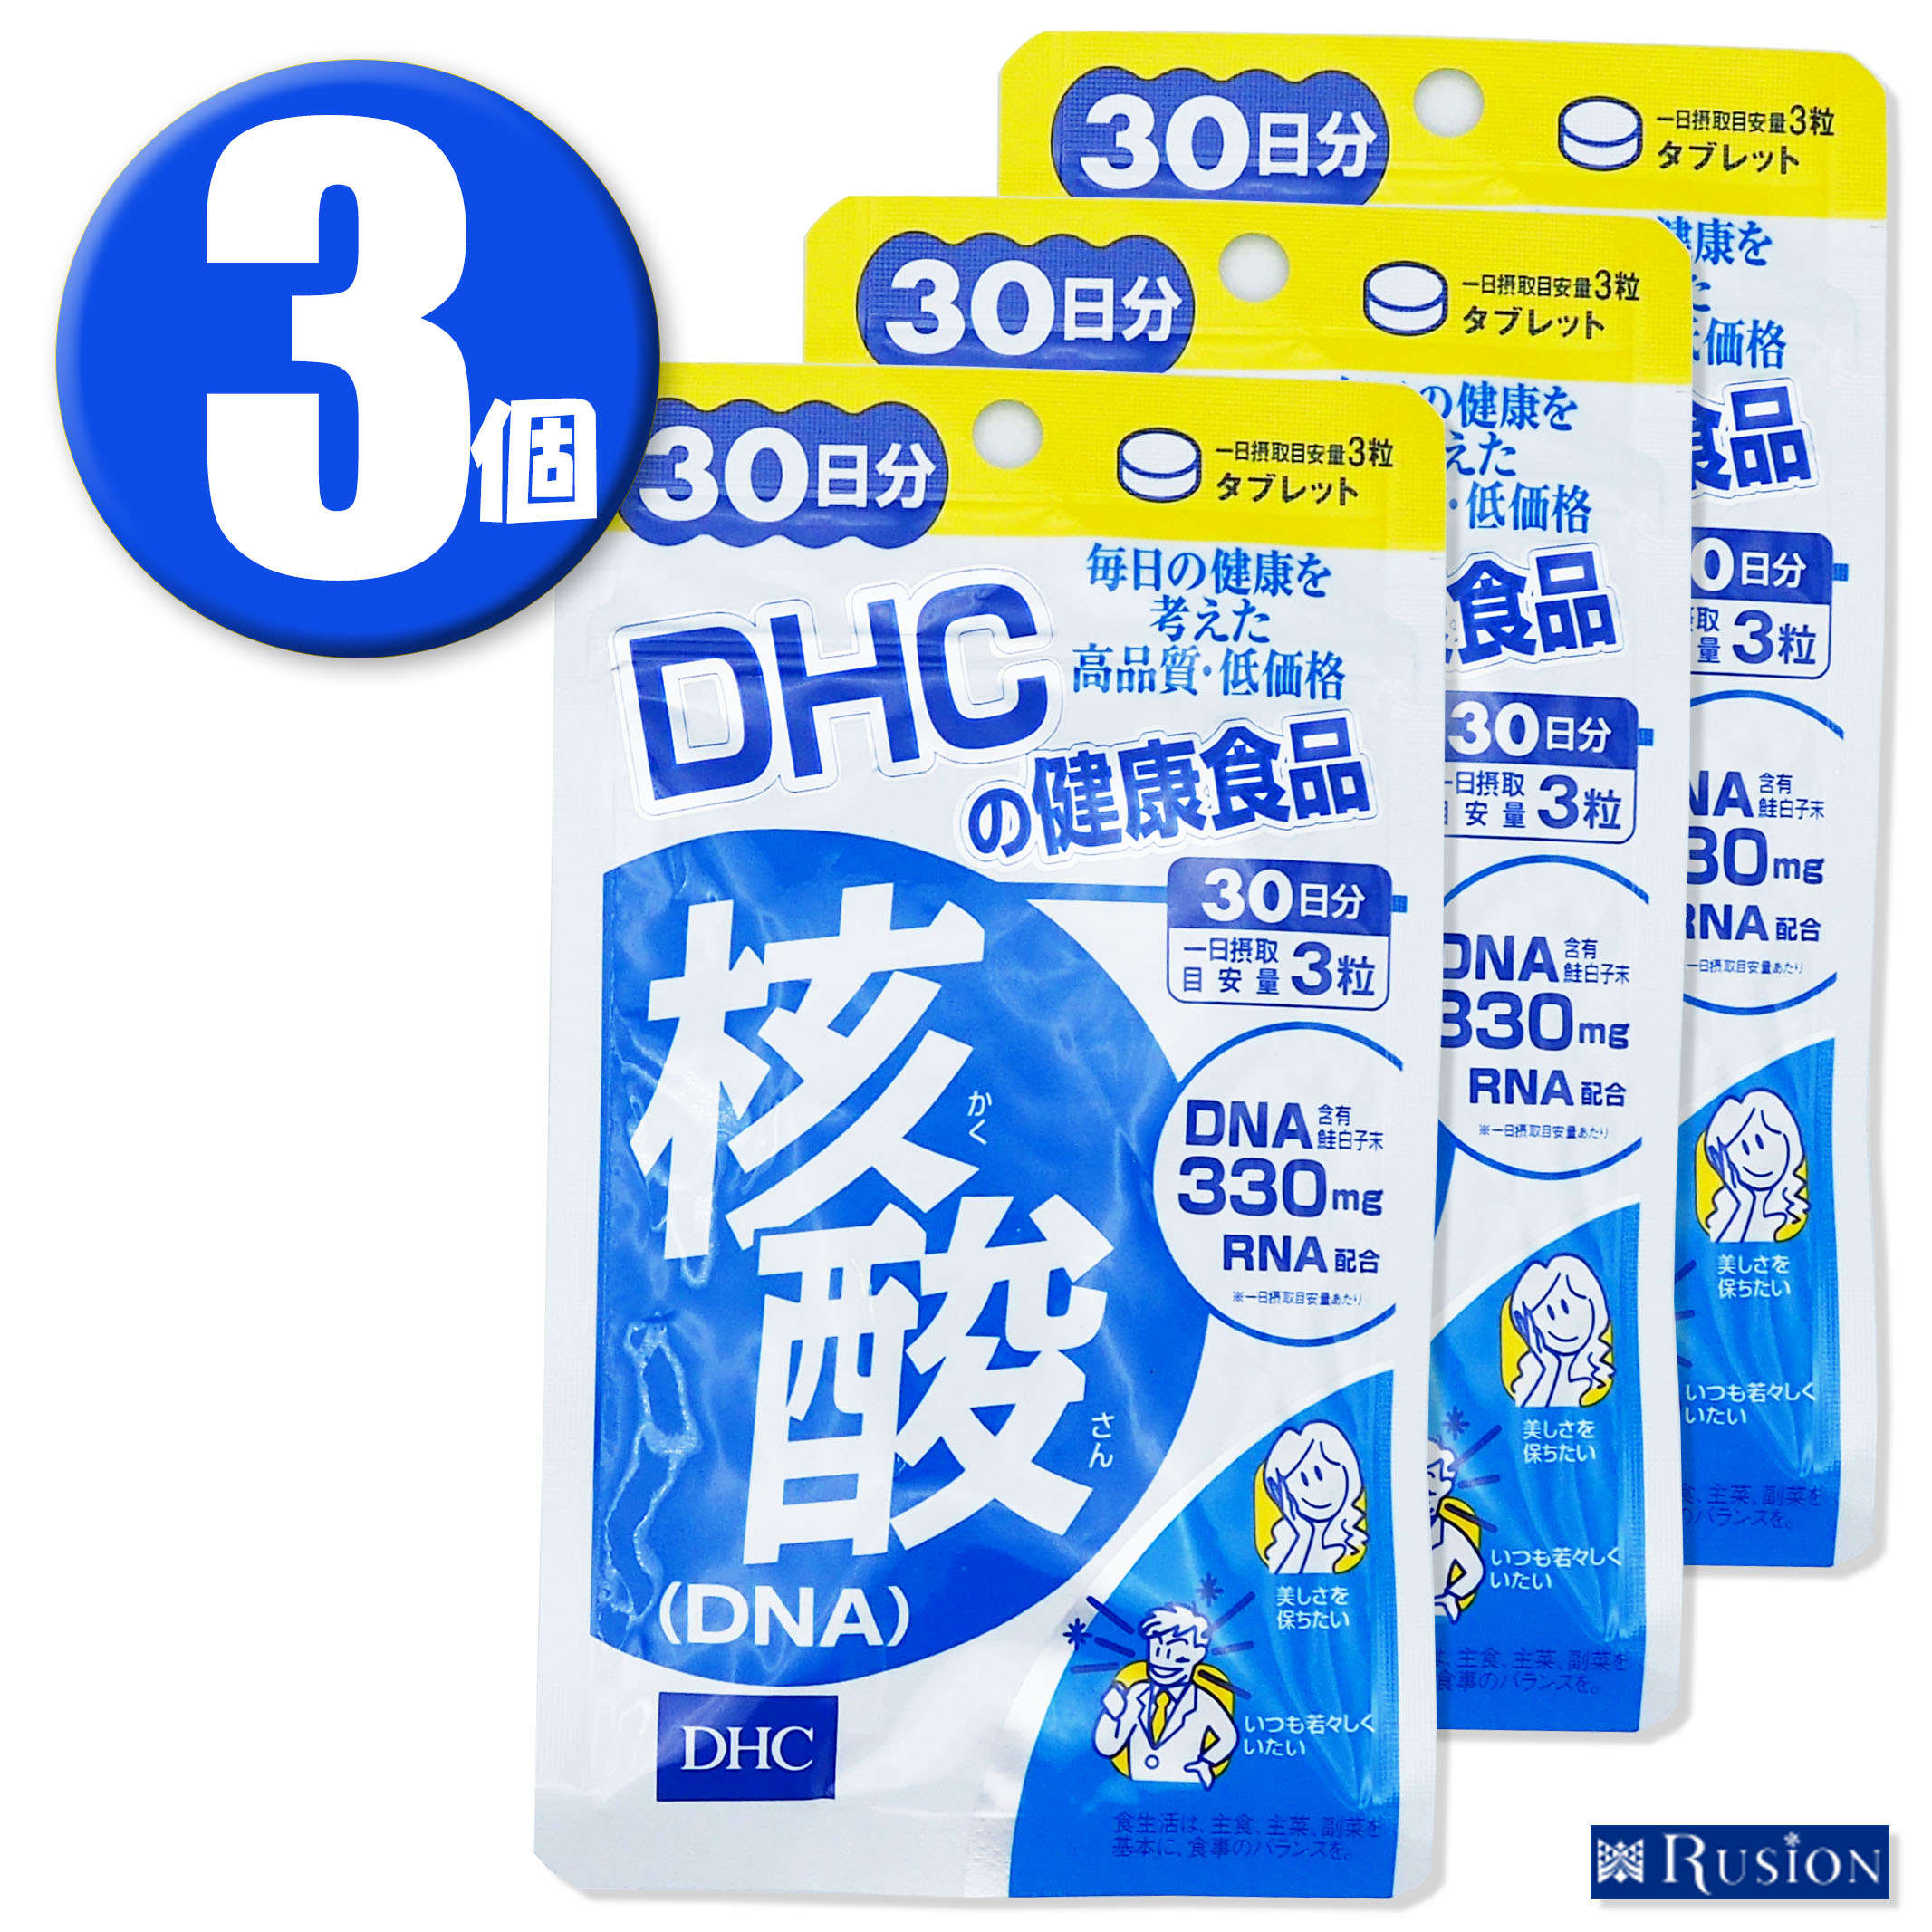 (3) DHC ץ ˻ DNA 30ʬ3 ǥ 򹯿